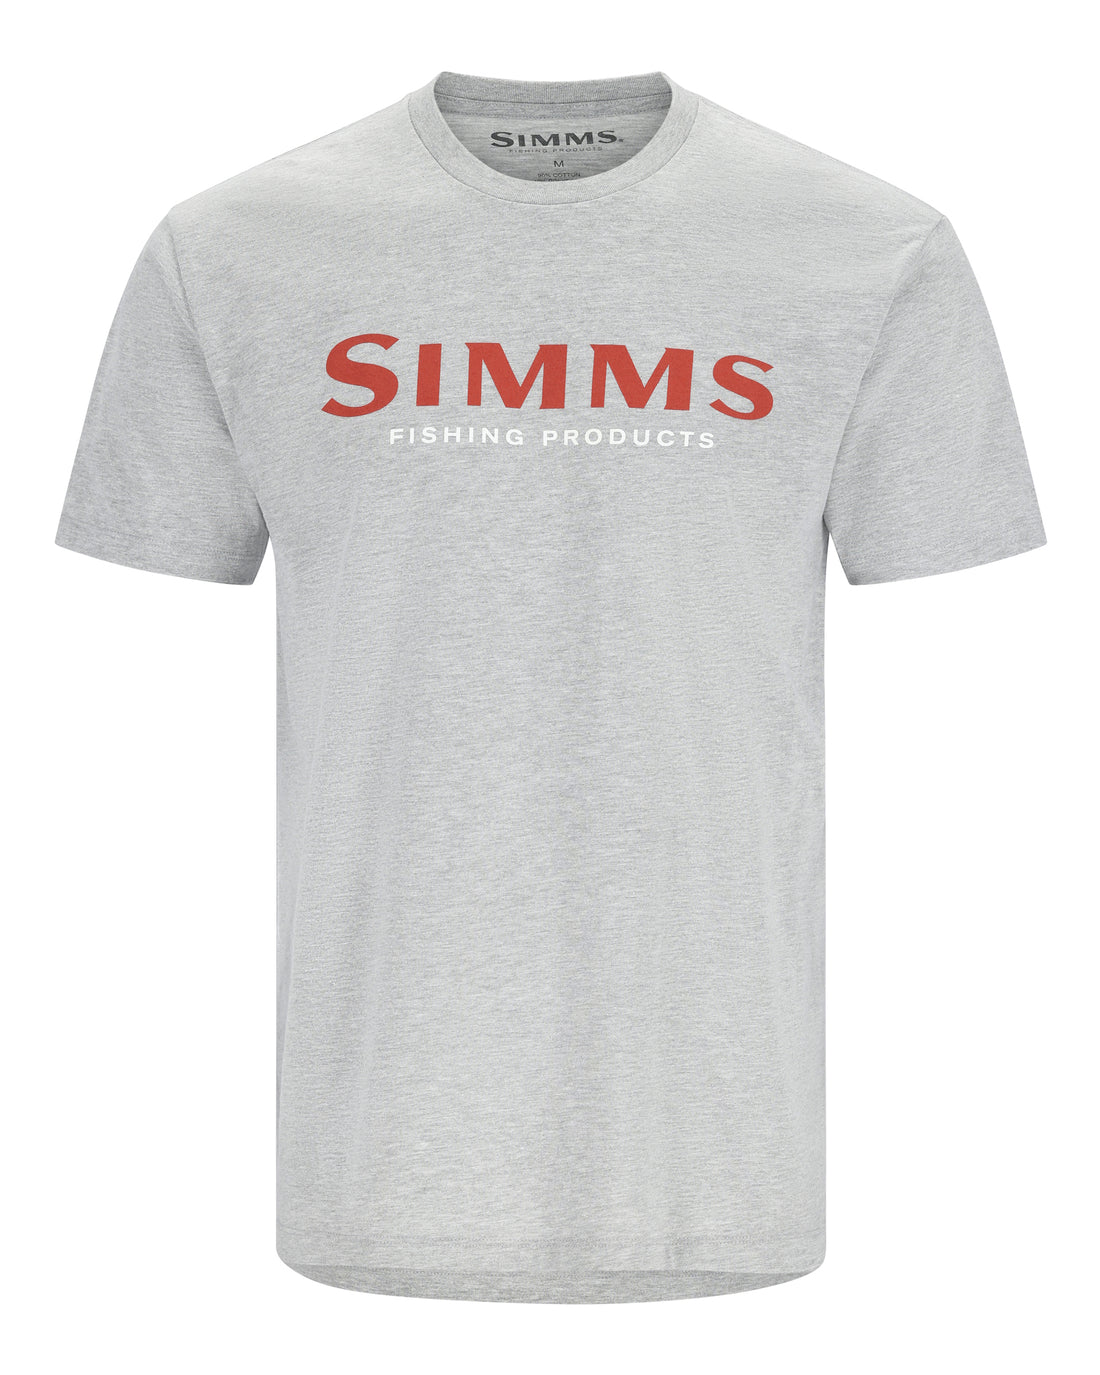 Simms Logo Fishing T-Shirt | Simms Fishing